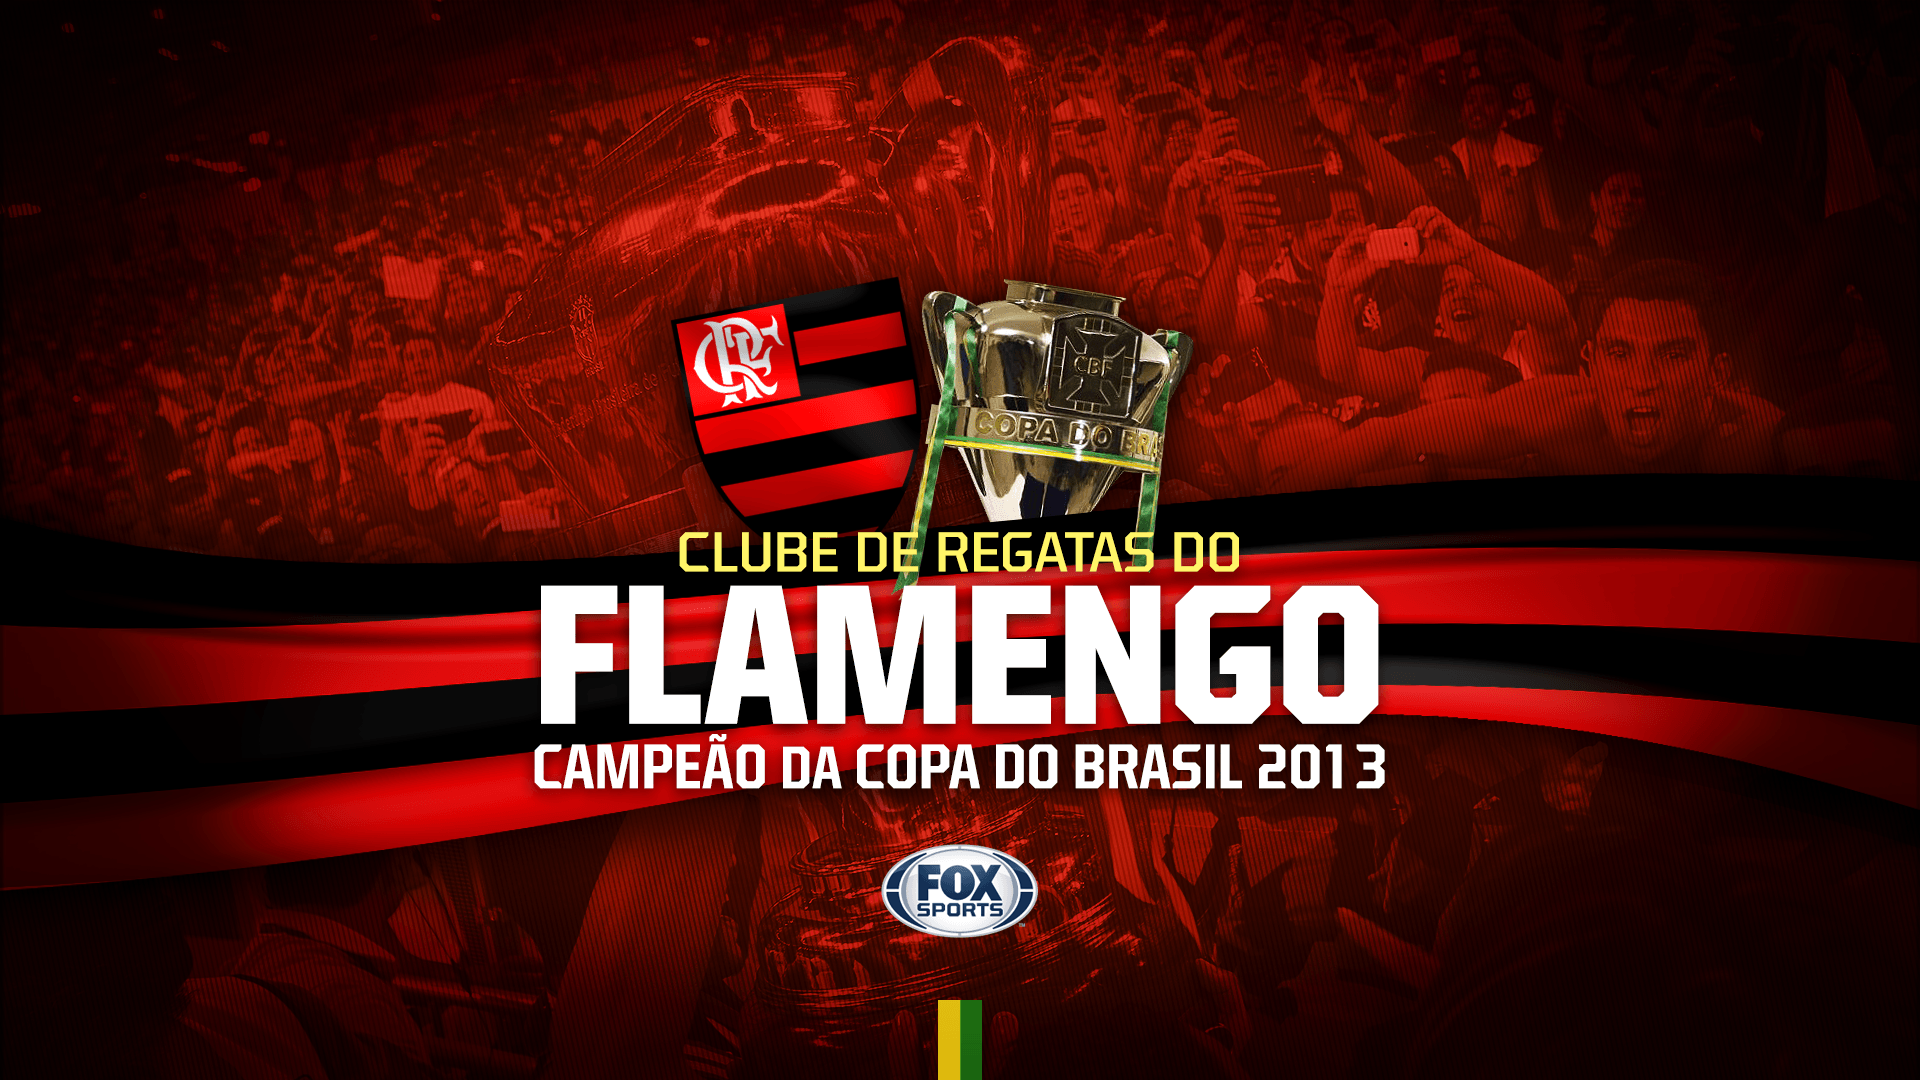 Baixe o wallpaper do Flamengo campeão da Copa do Brasil